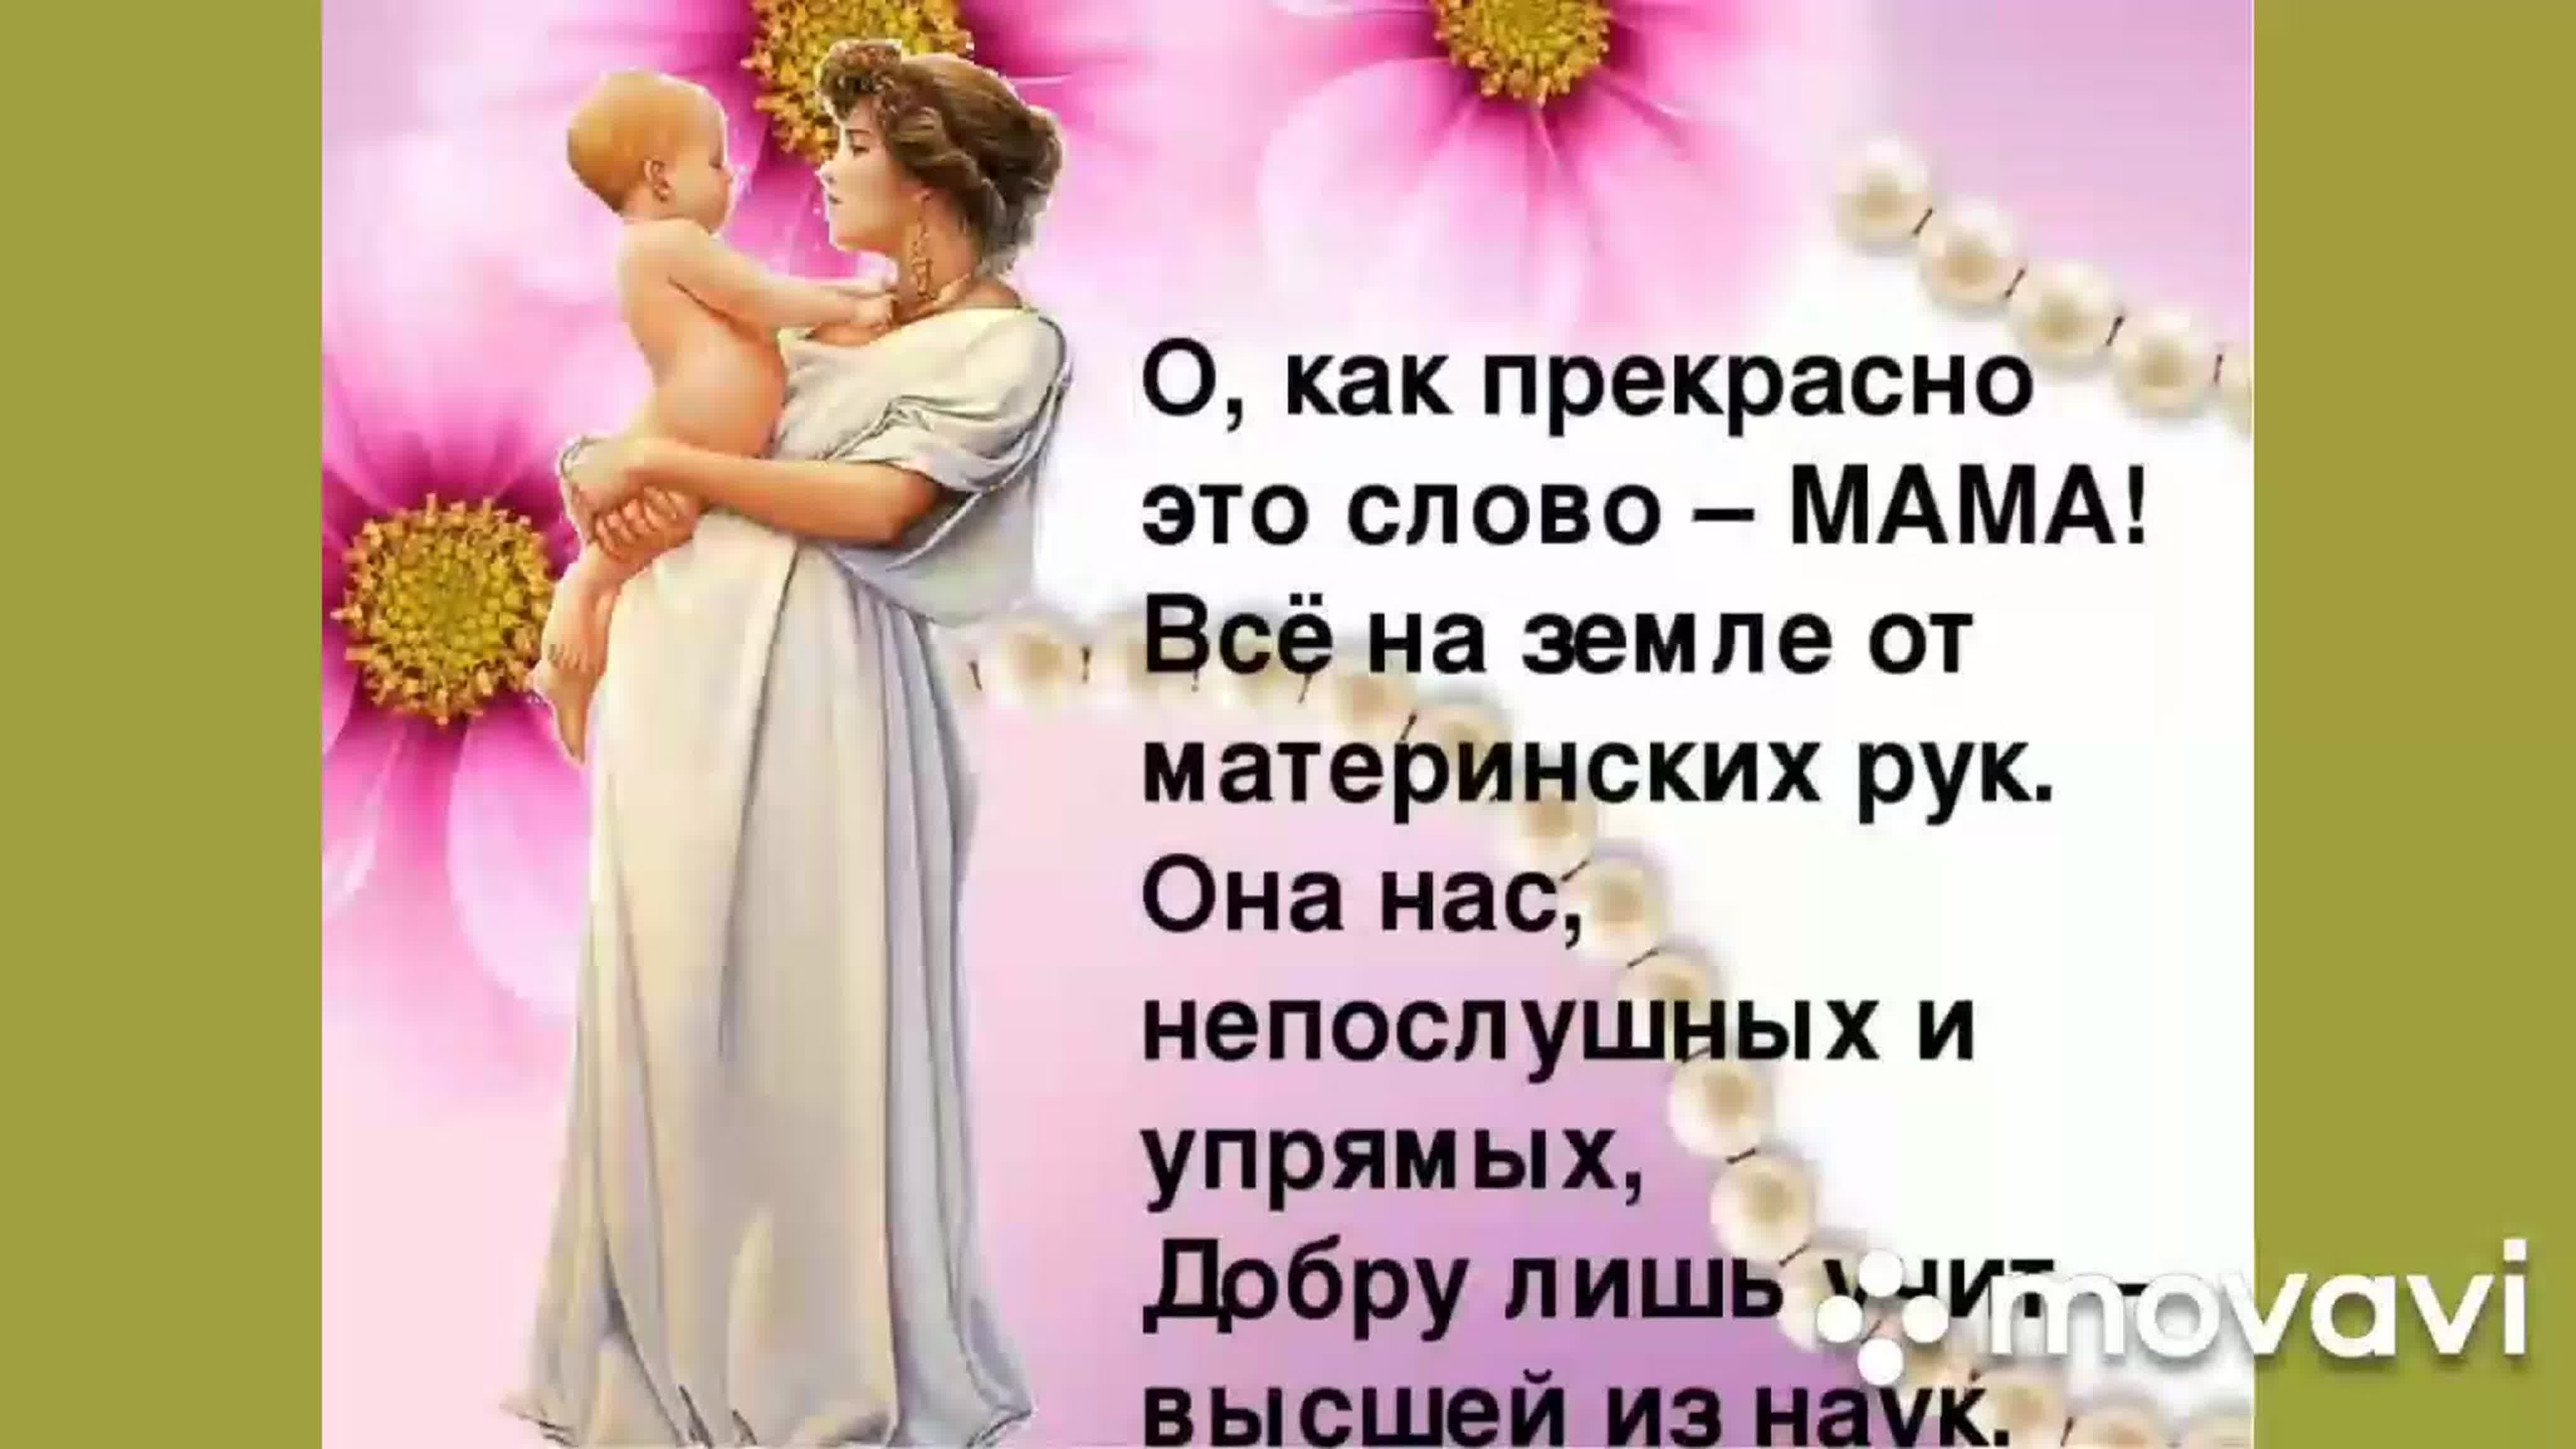 Слава про маму. Красивые слова про маму. Лучшие слова для мамы. Красивиеслова для мами. Самые лучшие слова для мамы.